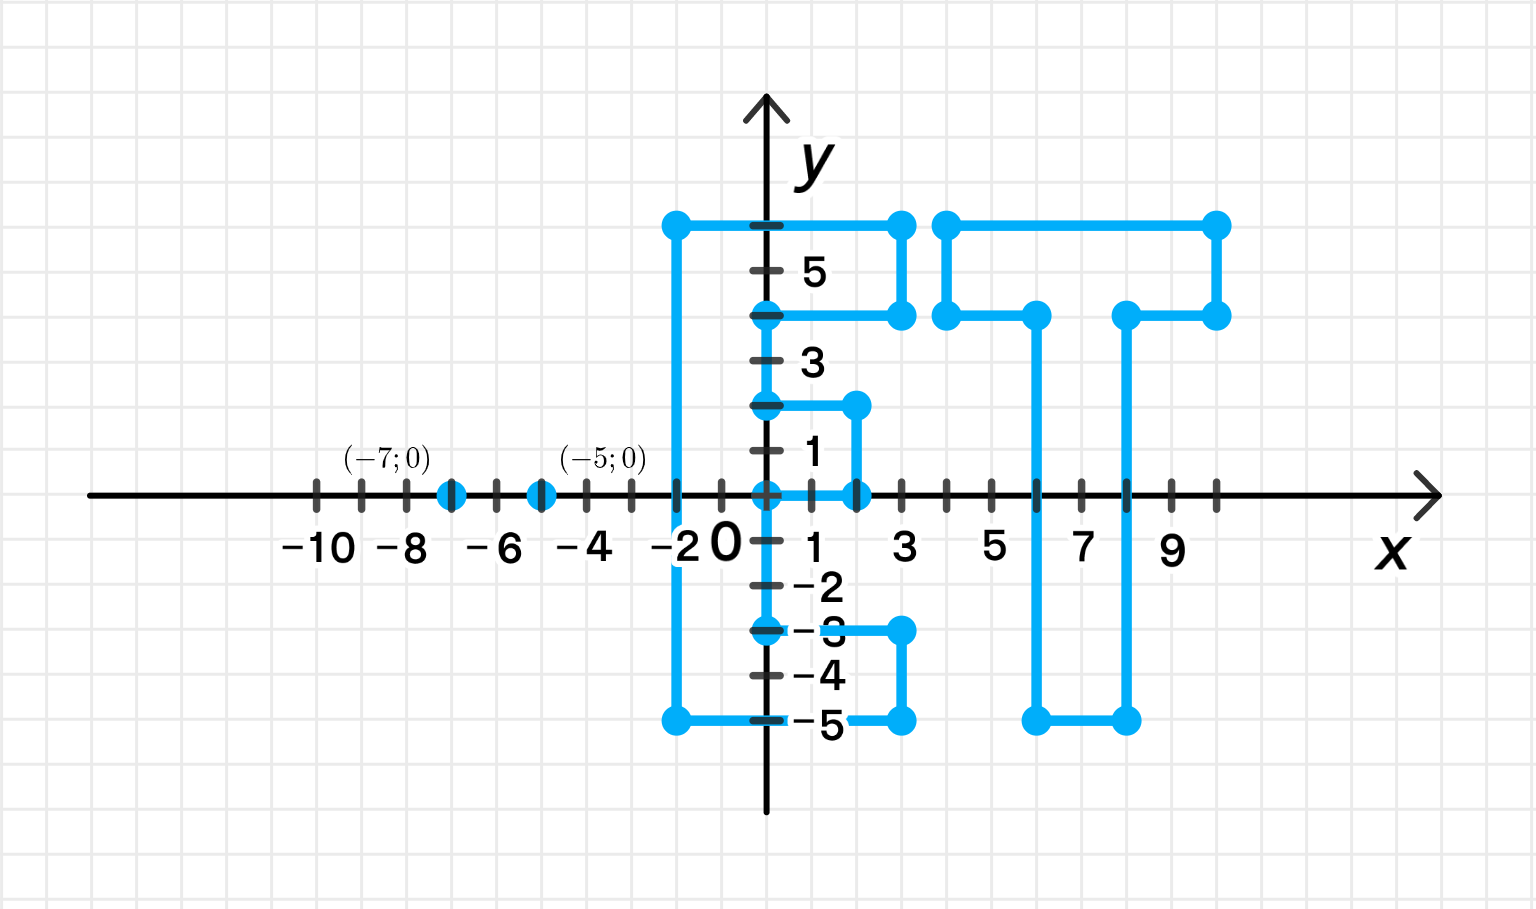 3 1 5 изобразите координат. Определите координаты отмеченных на рисунке 9 точек. Отметь пять точек с координатой y -2 и любым x.